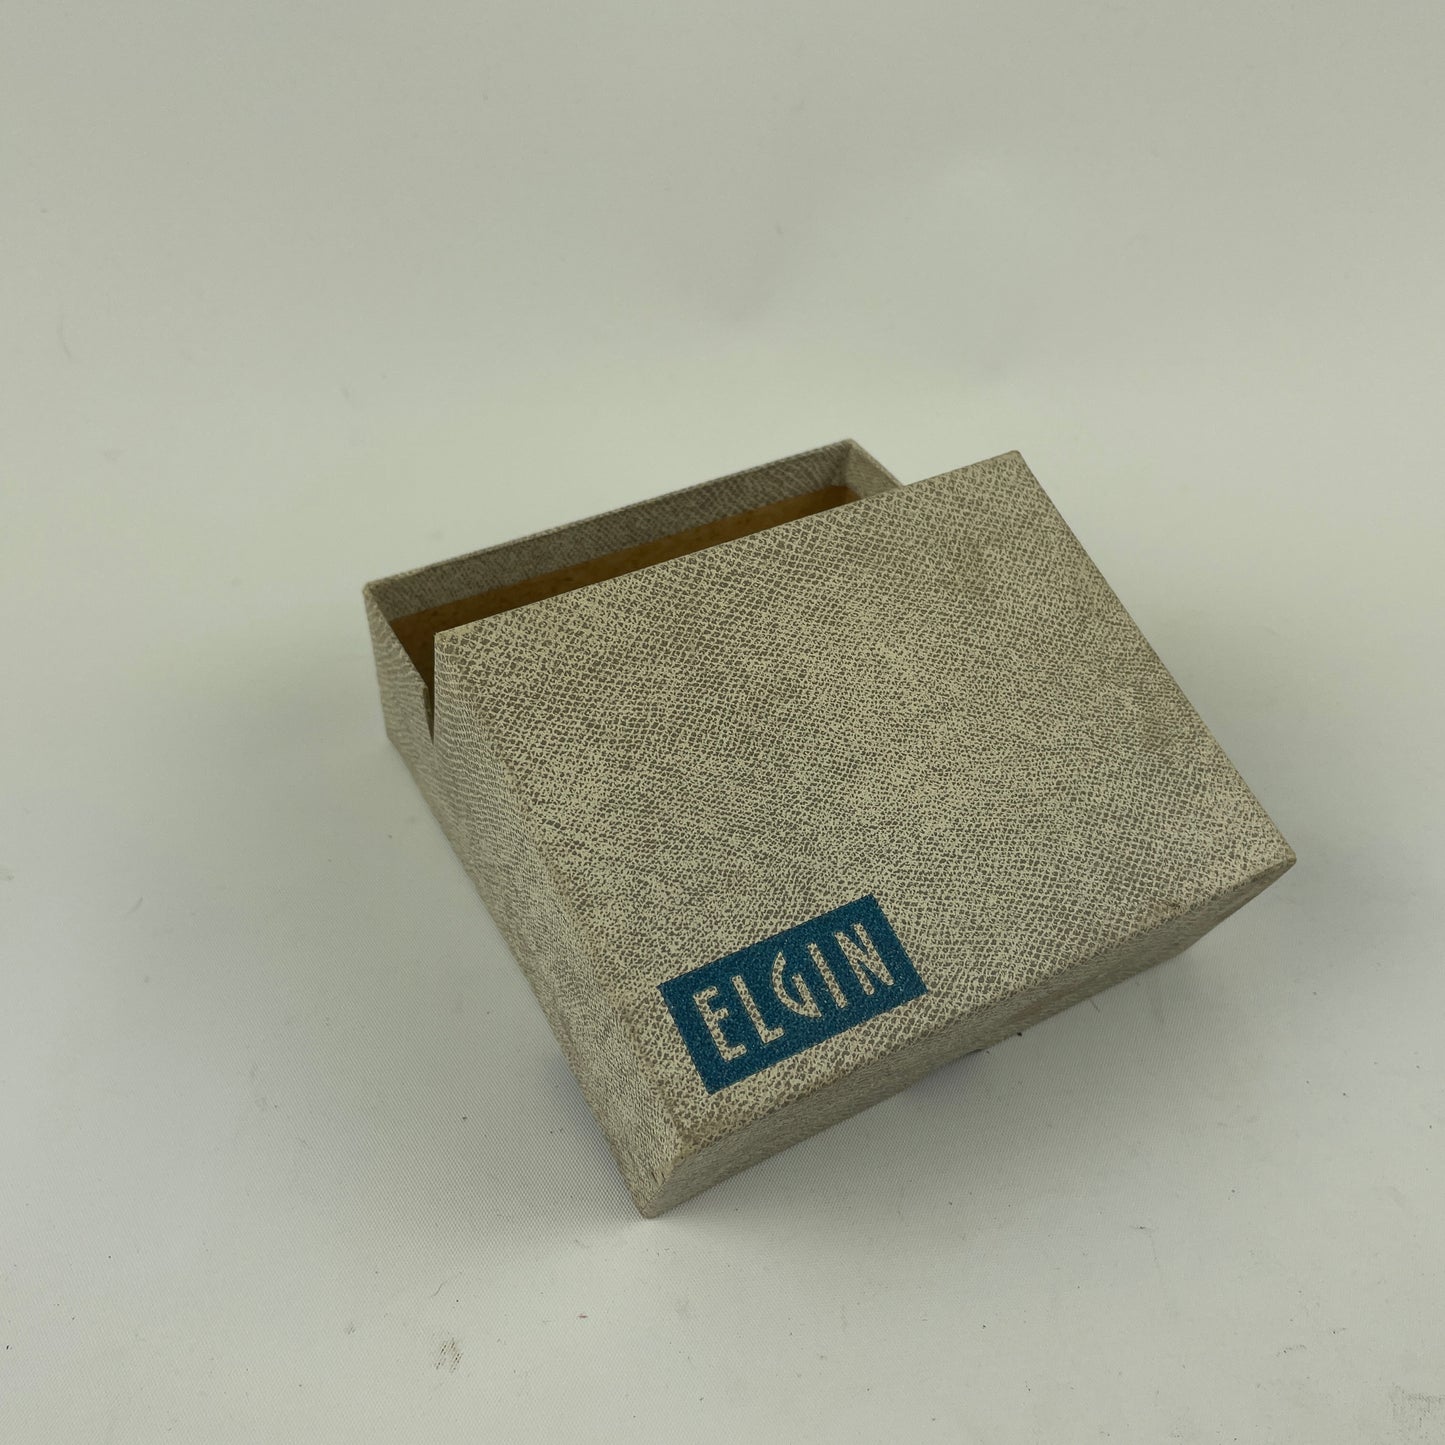 Lot 97- Vintage Elgin Wristwatch Boxes